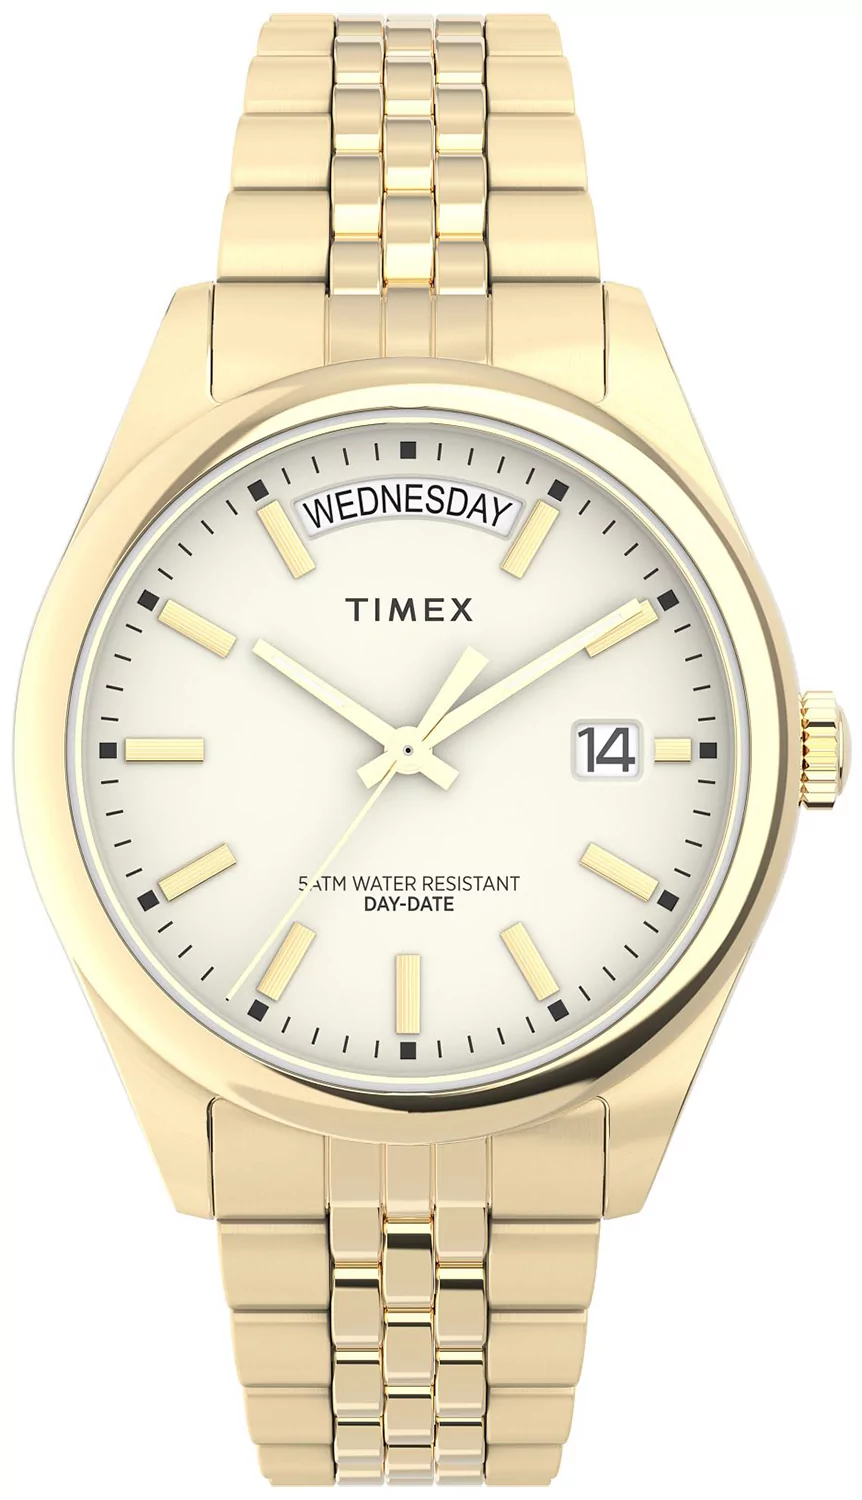 Zegarek Timex TW2V68300 Legacy Day and Date 36mm Stainless Steel Bracelet - Natychmiastowa WYSYŁKA 0zł (DHL DPD INPOST) | Grawer 1zł | Zwrot 100 dni